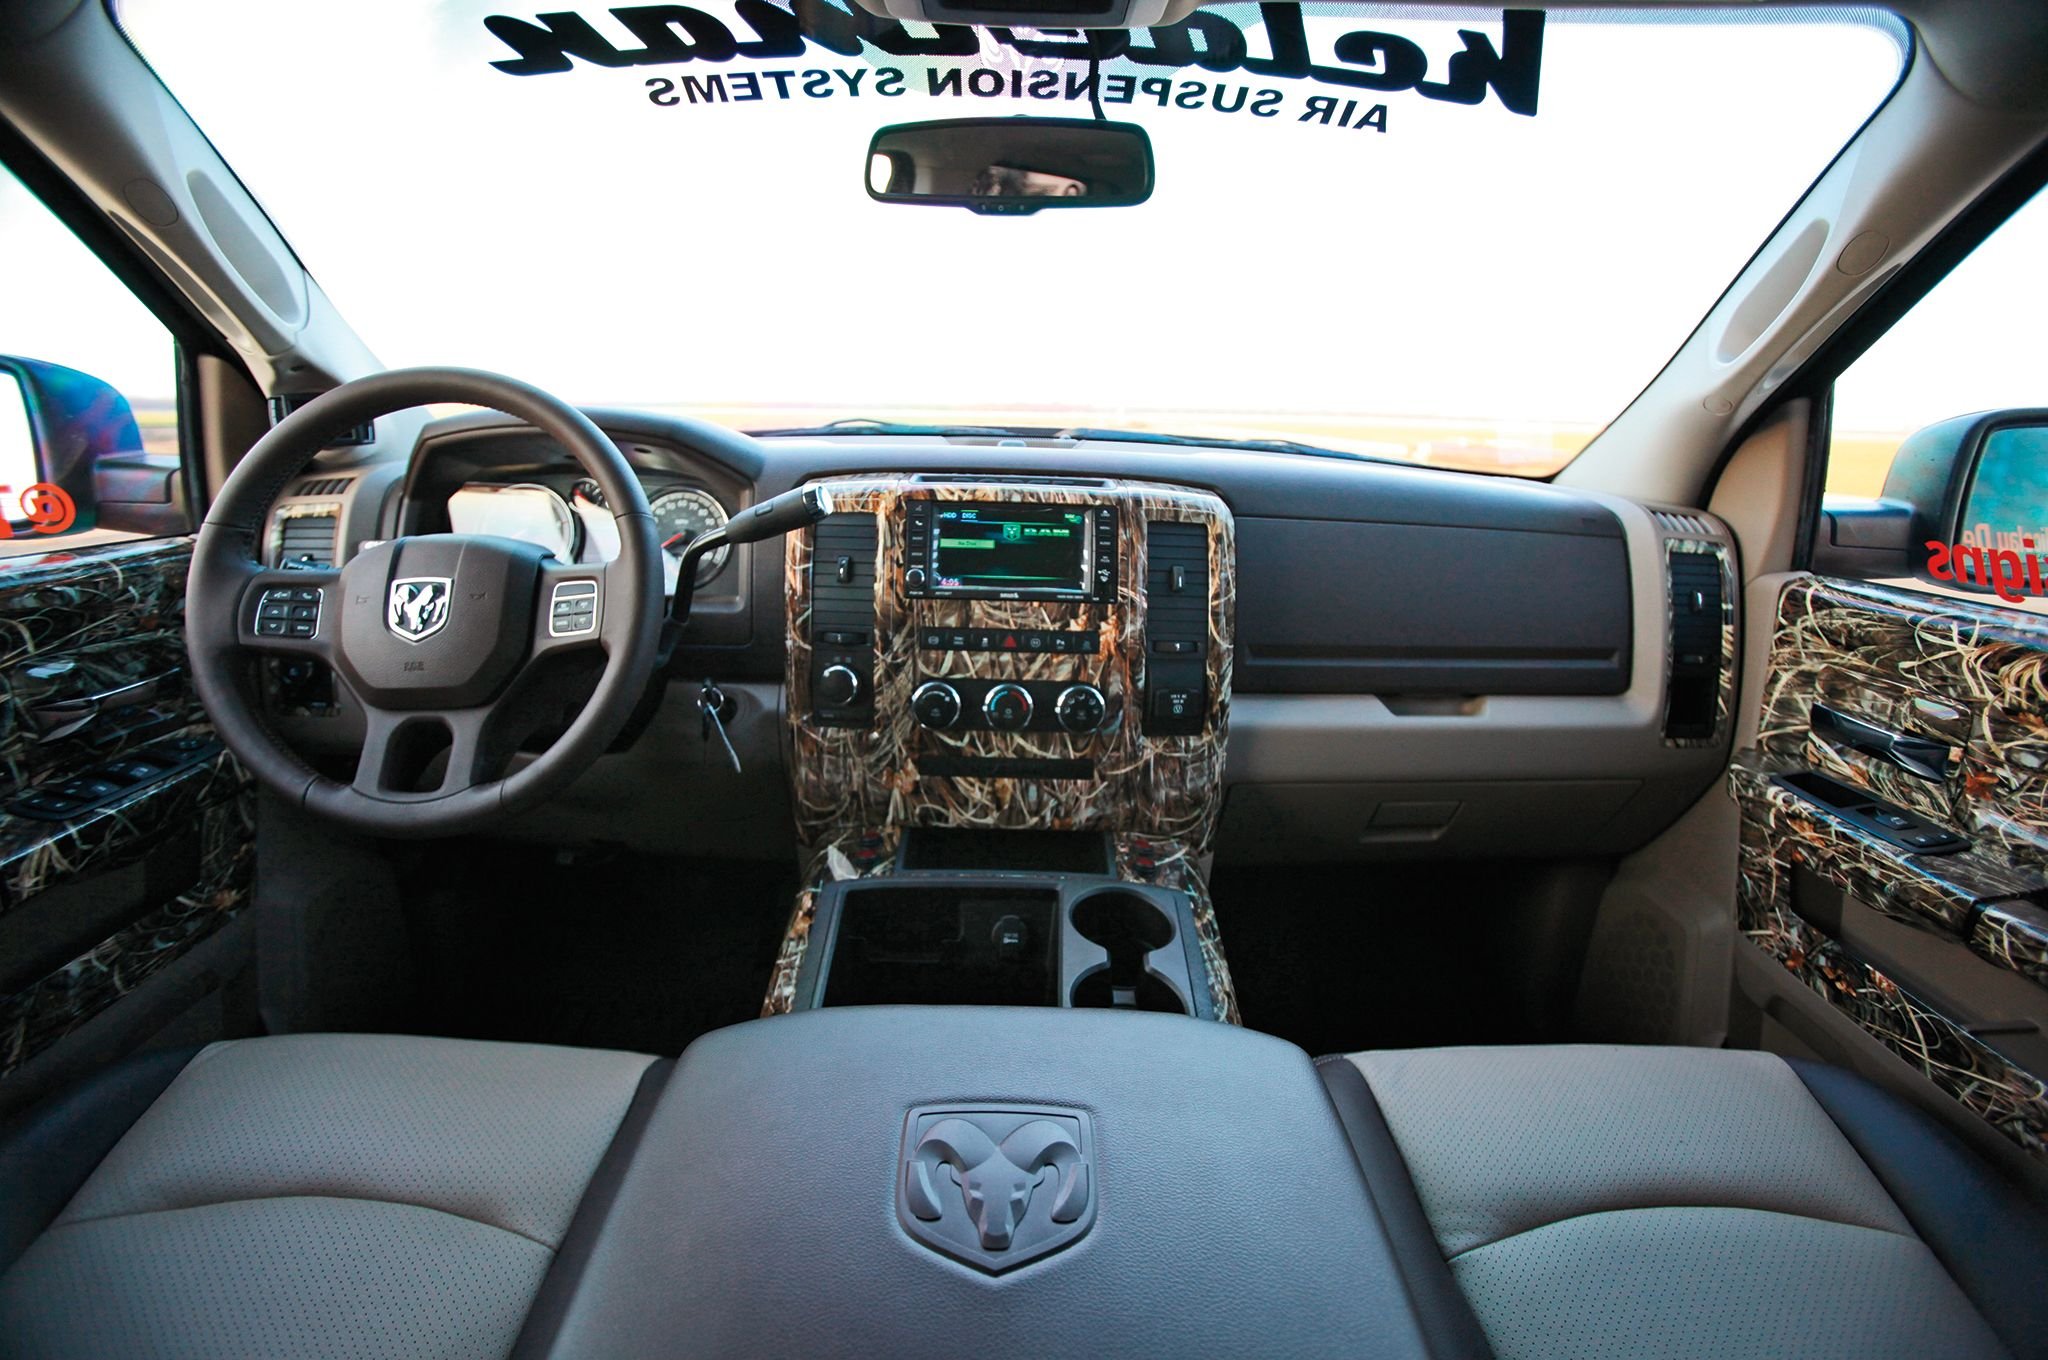 2013, Dodge, Ram, 2500, 4x4, Mopar, Pickup, Custom, Tuning Wallpaper